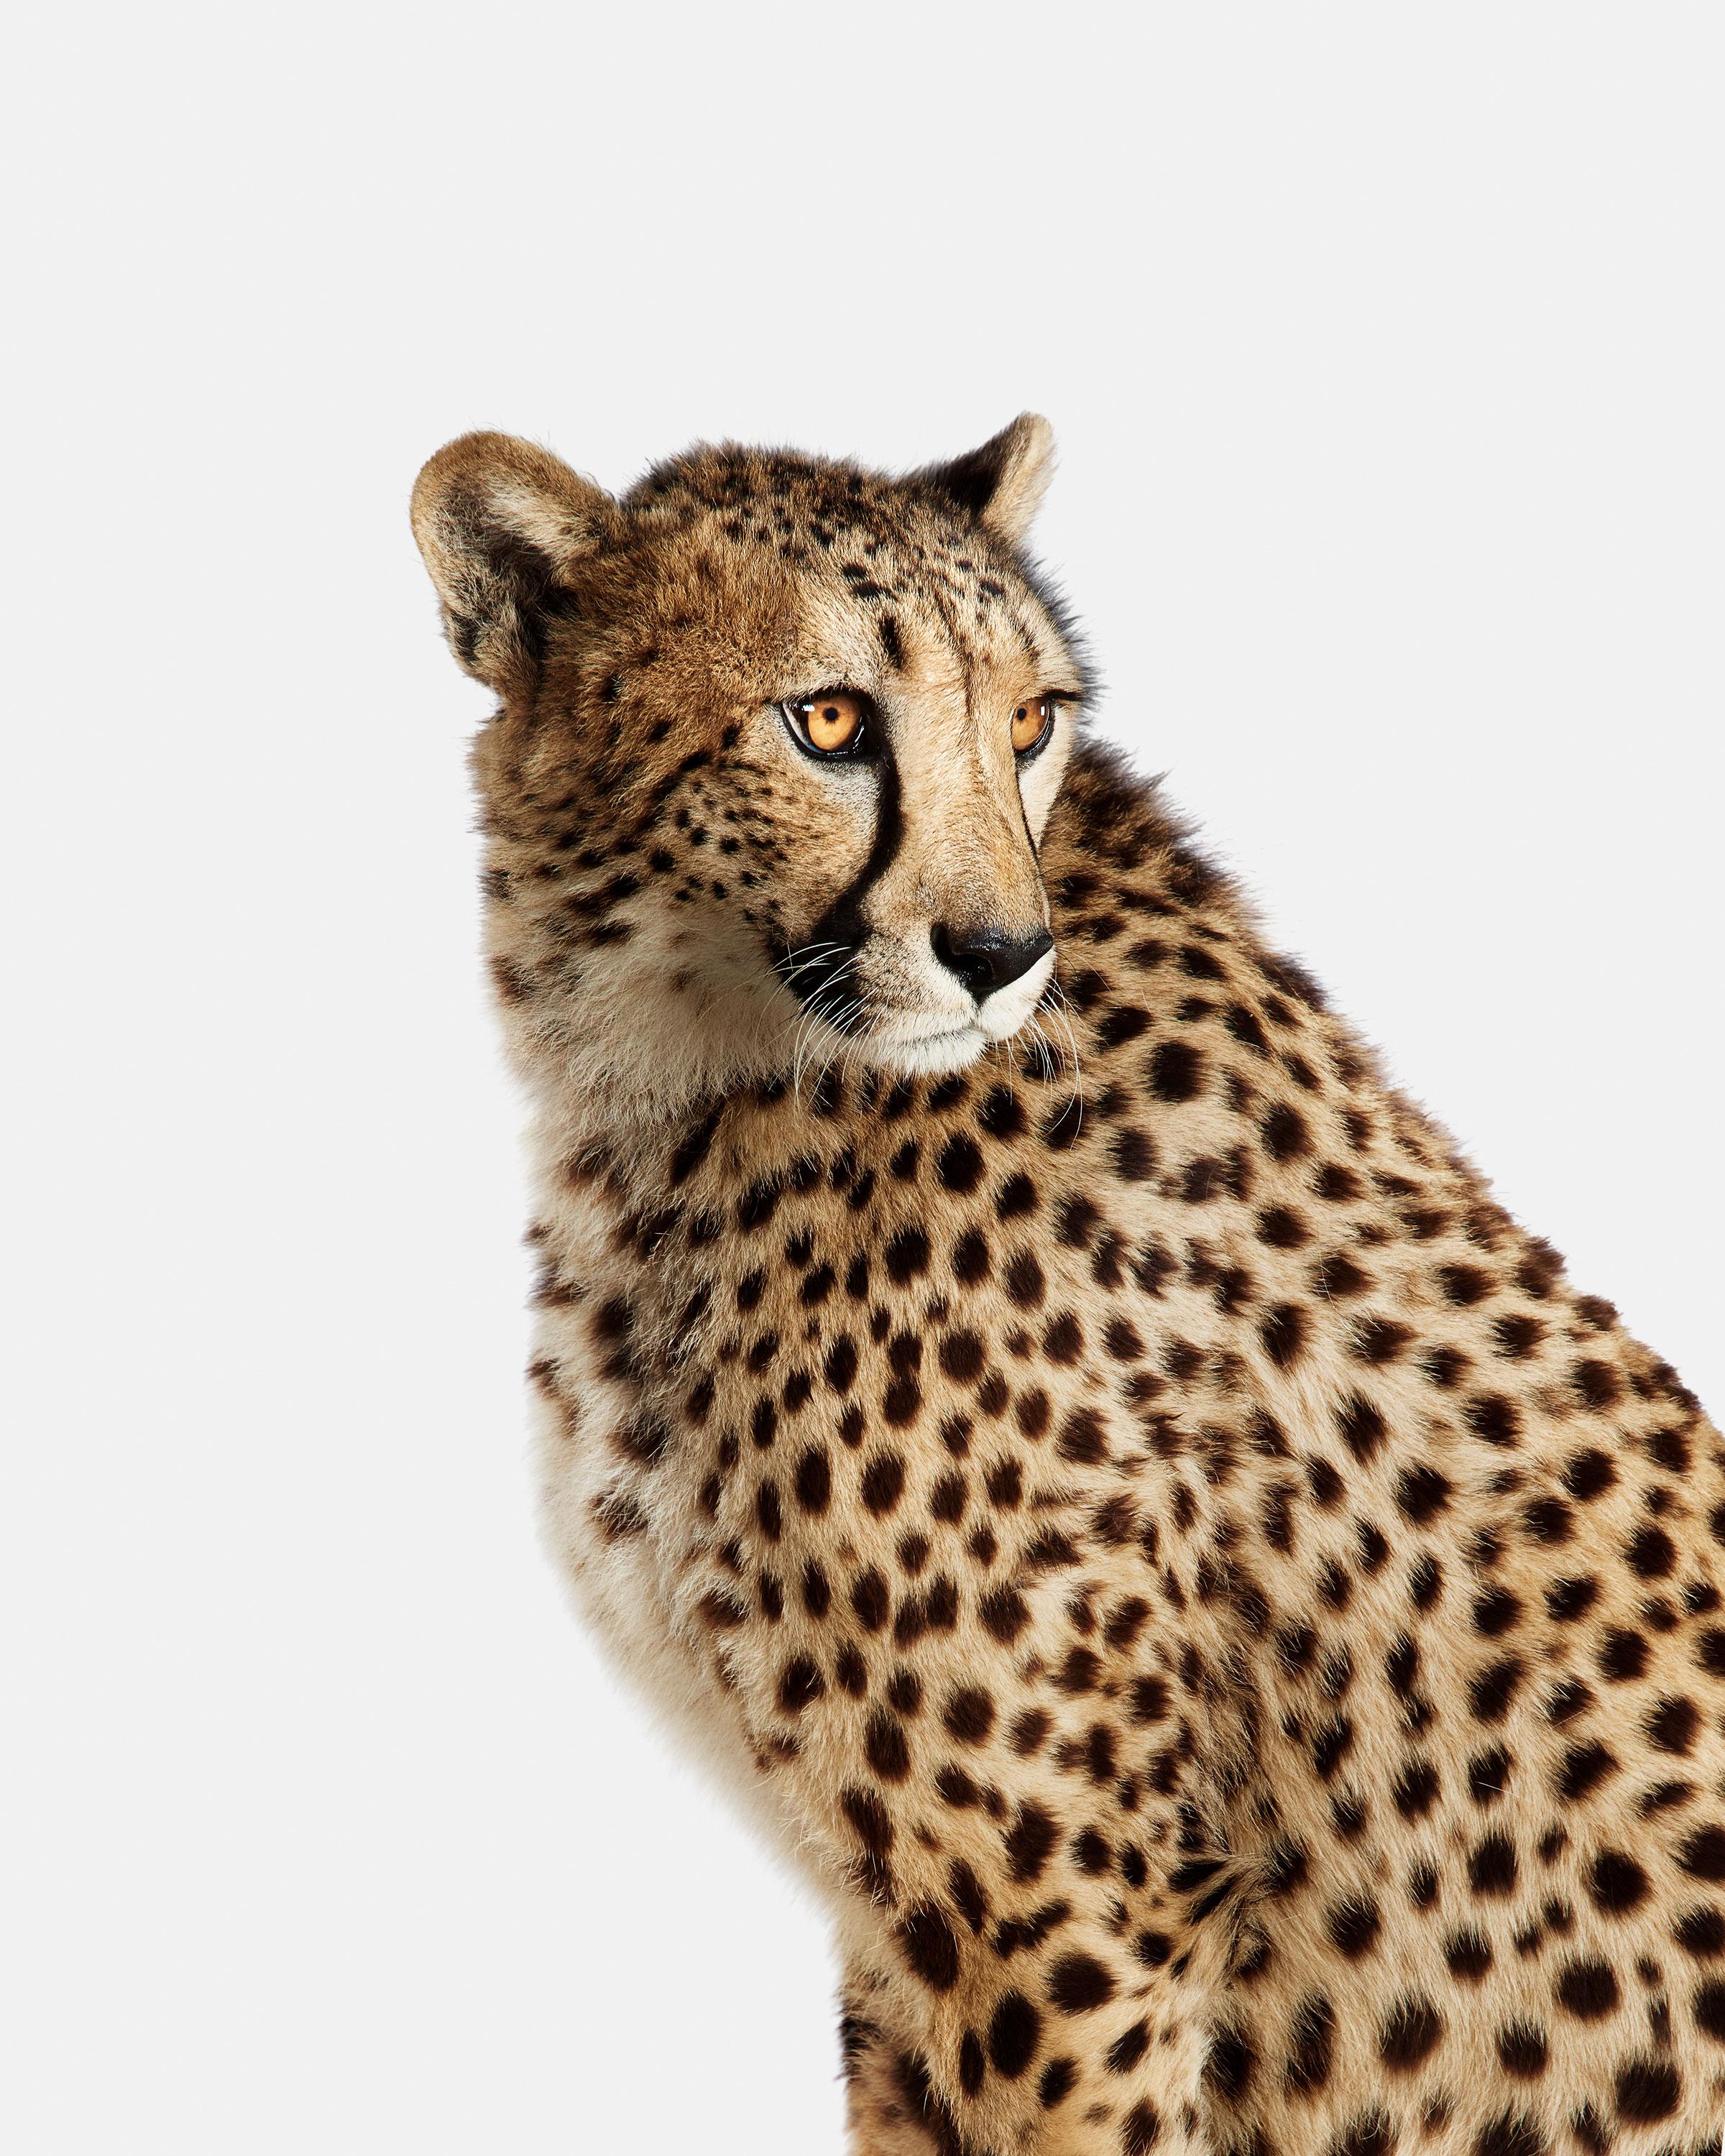 Randal Ford Color Photograph - Cheetah No. 1 (60" x 48")